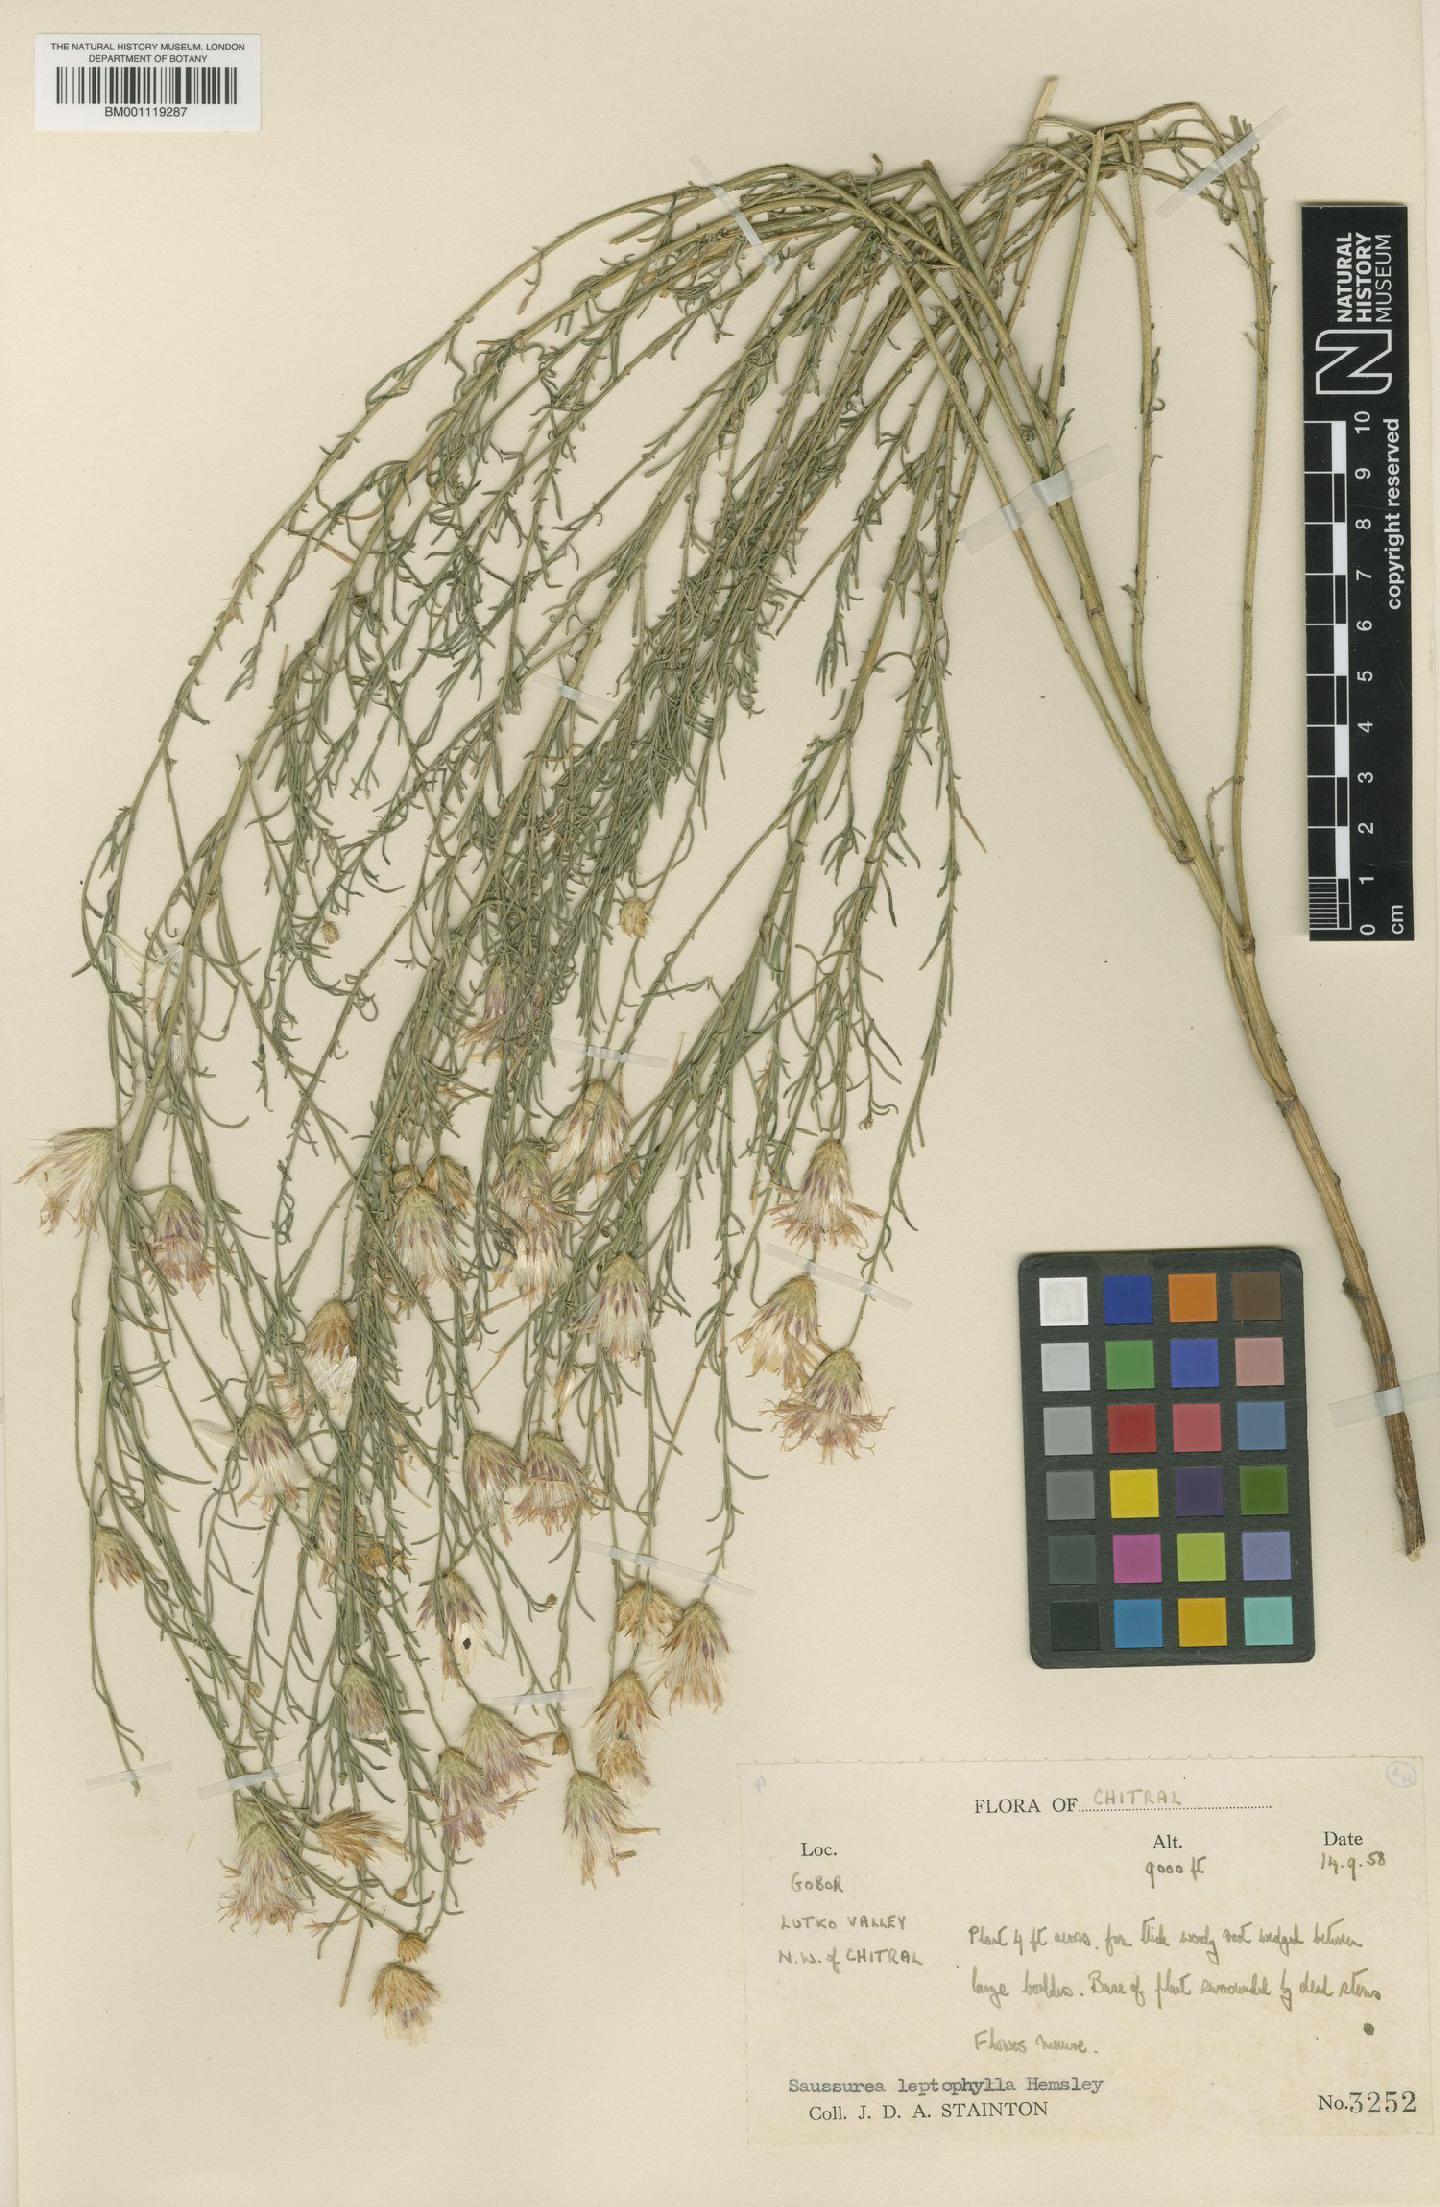 To NHMUK collection (Saussurea leptophylla Hemsl.; NHMUK:ecatalogue:7973514)